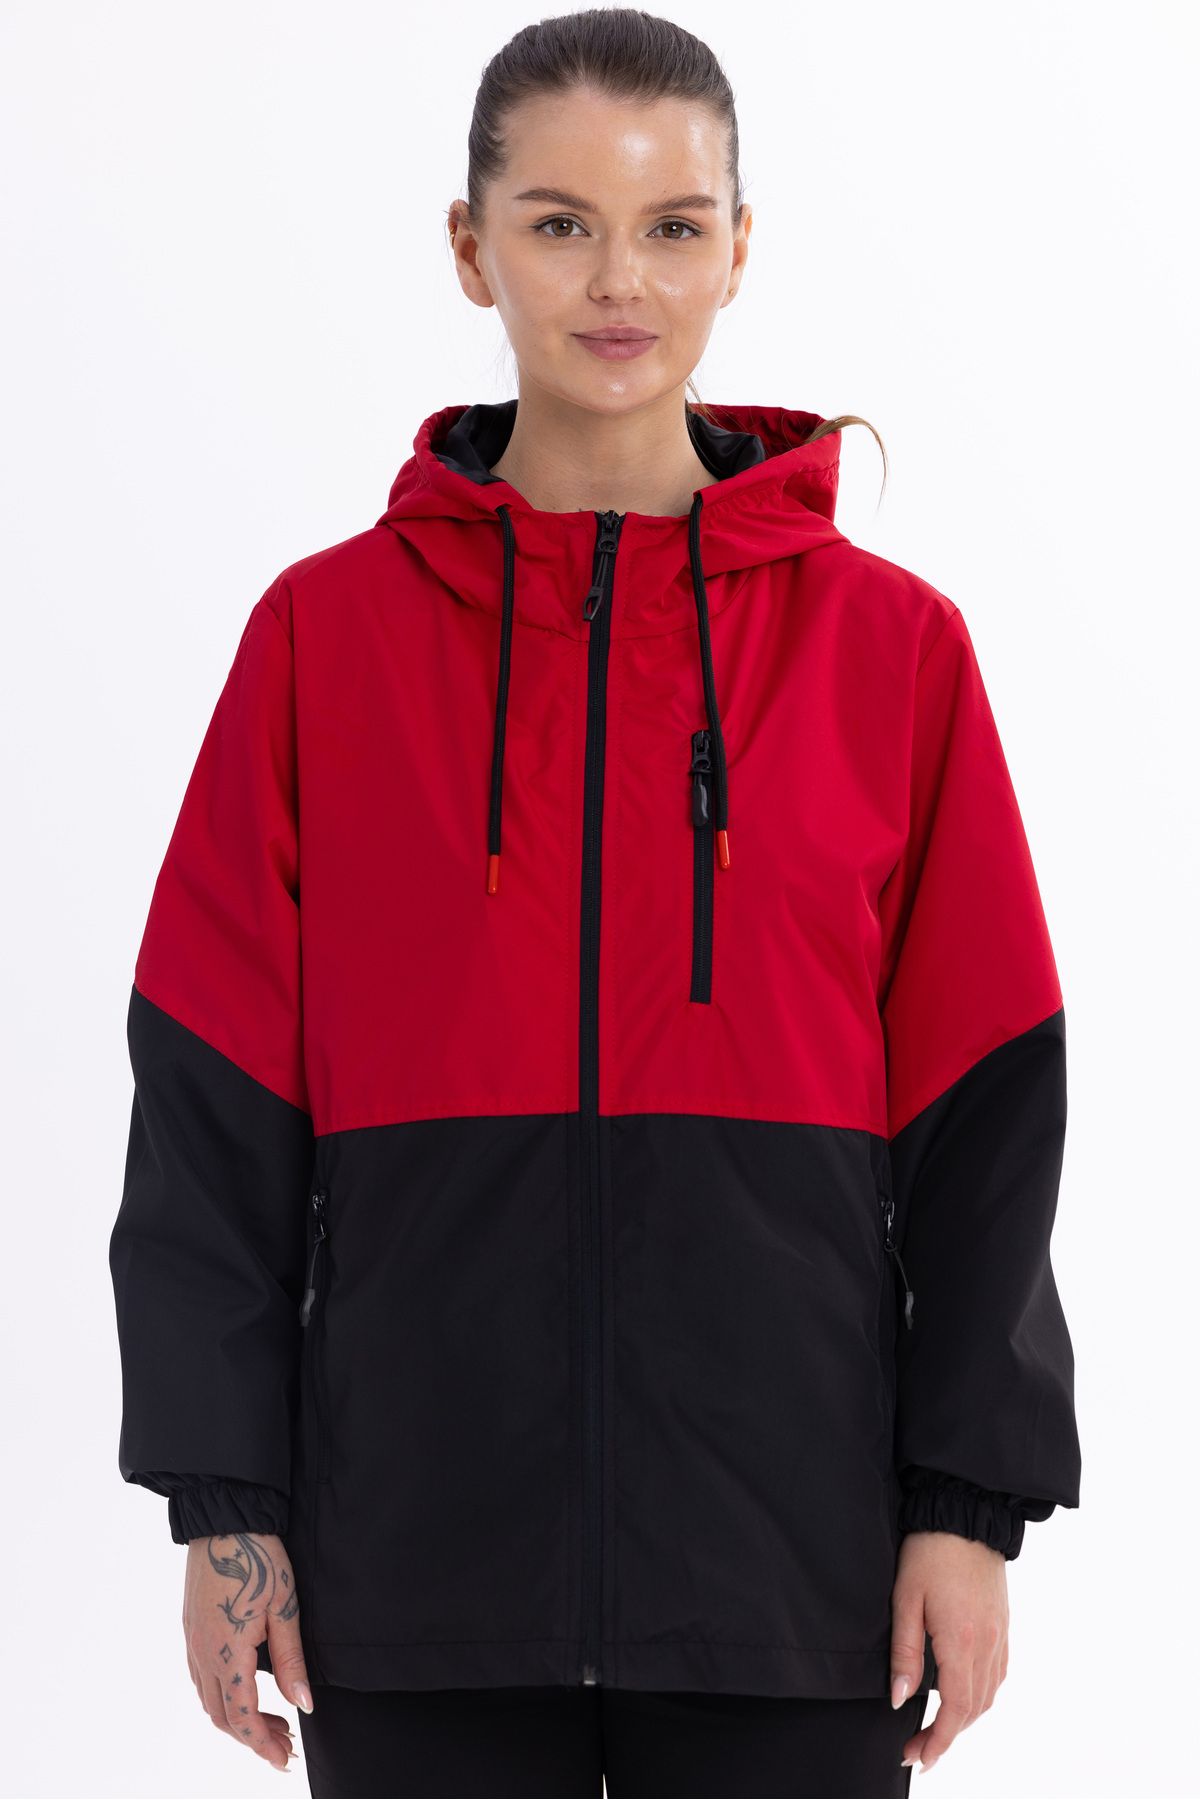 QAWWA Kadın Kırmızı-Siyah Içi Astarlı Suya Dayanıklı Kapüşonlu Cepli Spor Yağmurluk - Rüzgarlık Ceket